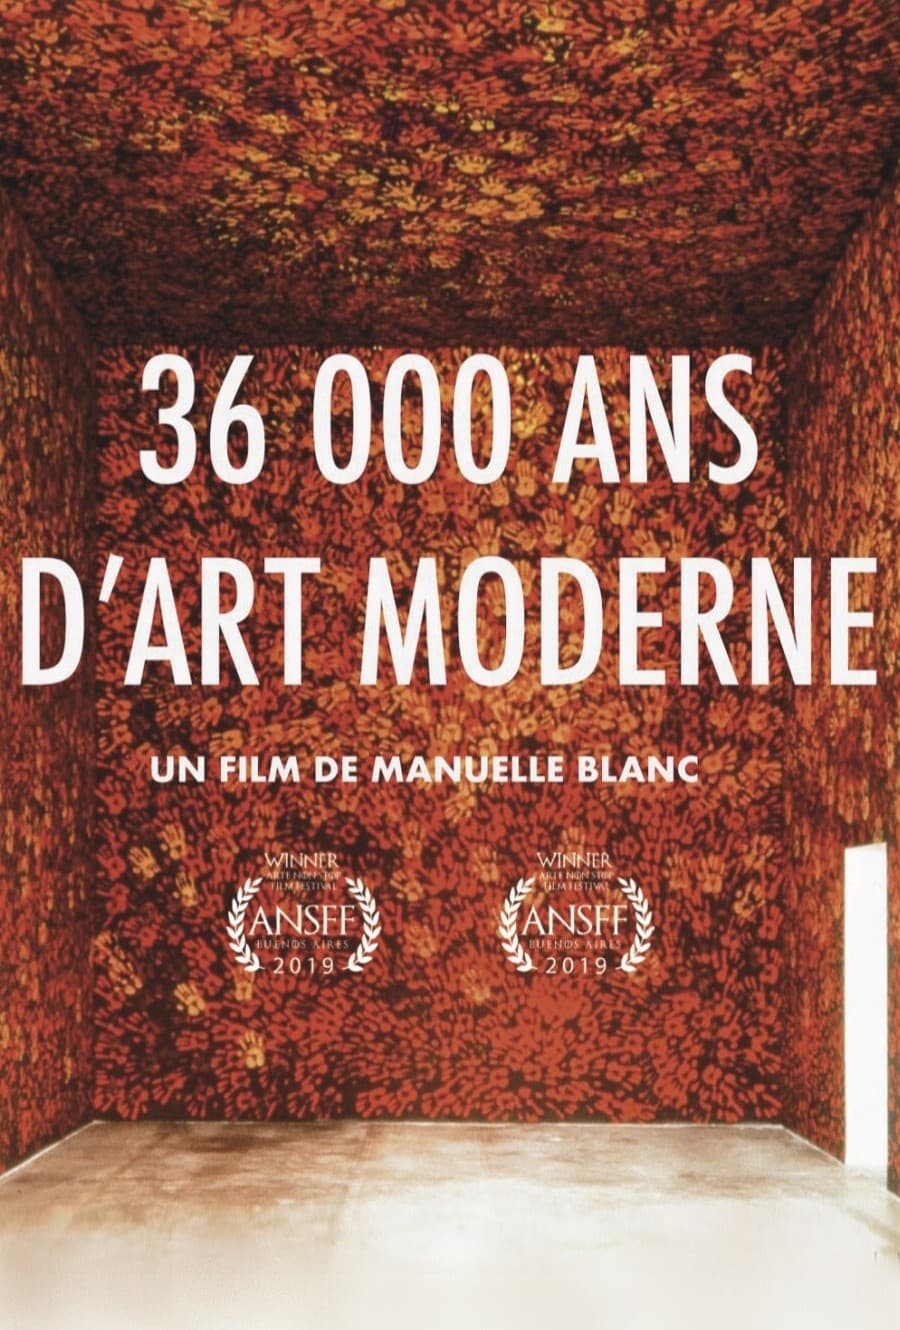 36 000 Ans D'art Moderne, De Chauvet à Picasso